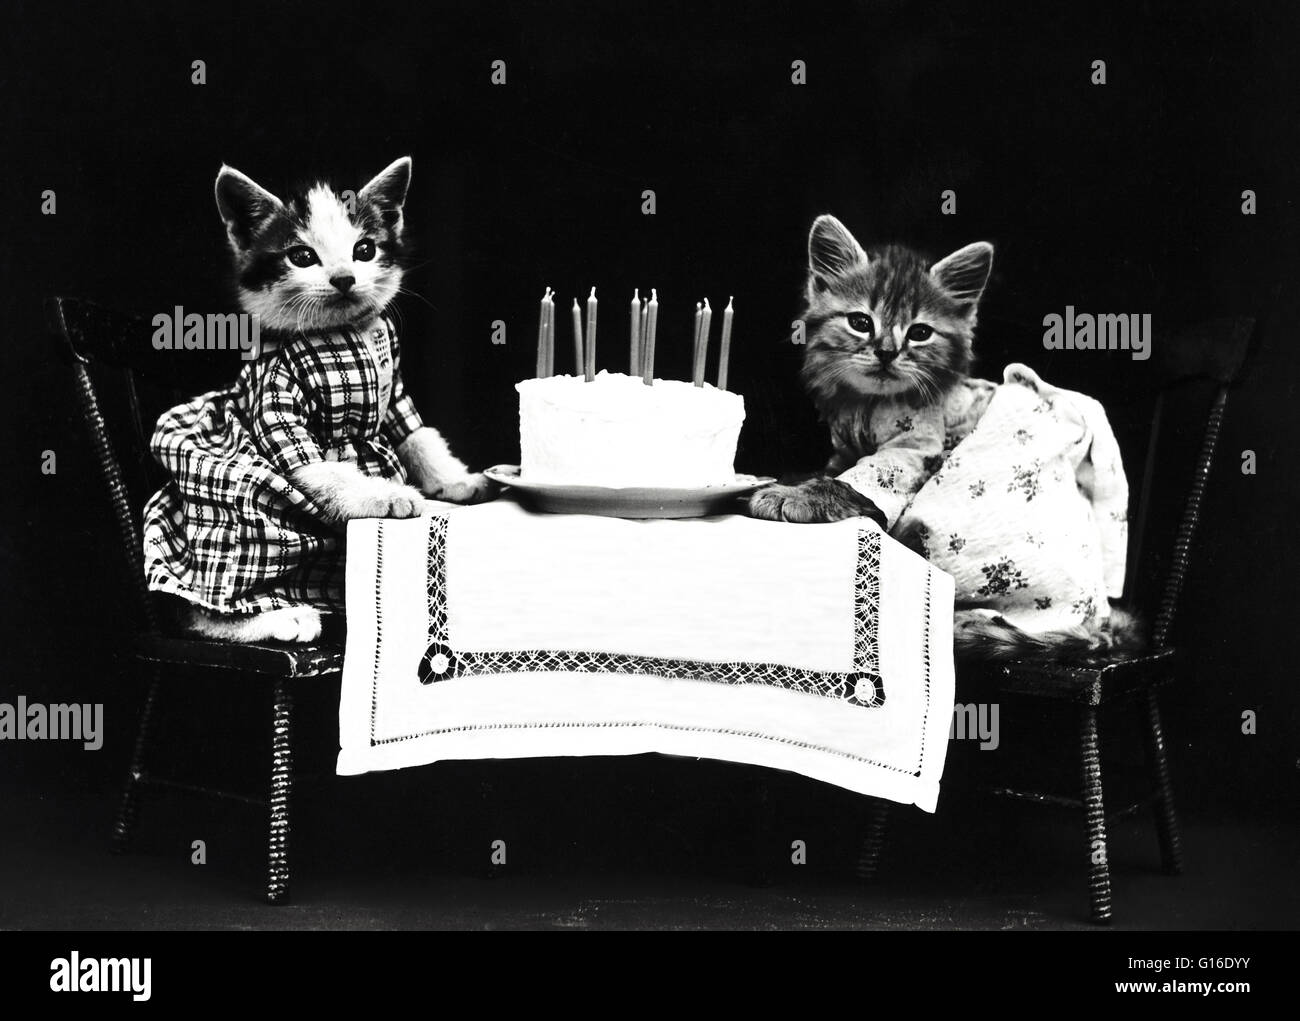 Titel: "Geburtstagstorte" zeigt zwei Kätzchen tragen Kleider an einem Tisch mit einer Geburtstagstorte. Harry Whittier befreit (1879-1953) war ein US-amerikanischer Fotograf, der lebende Tiere gekleidet und posierte in menschlichen Situationen mit Requisiten fotografiert. Seine tierischen pho Stockfoto